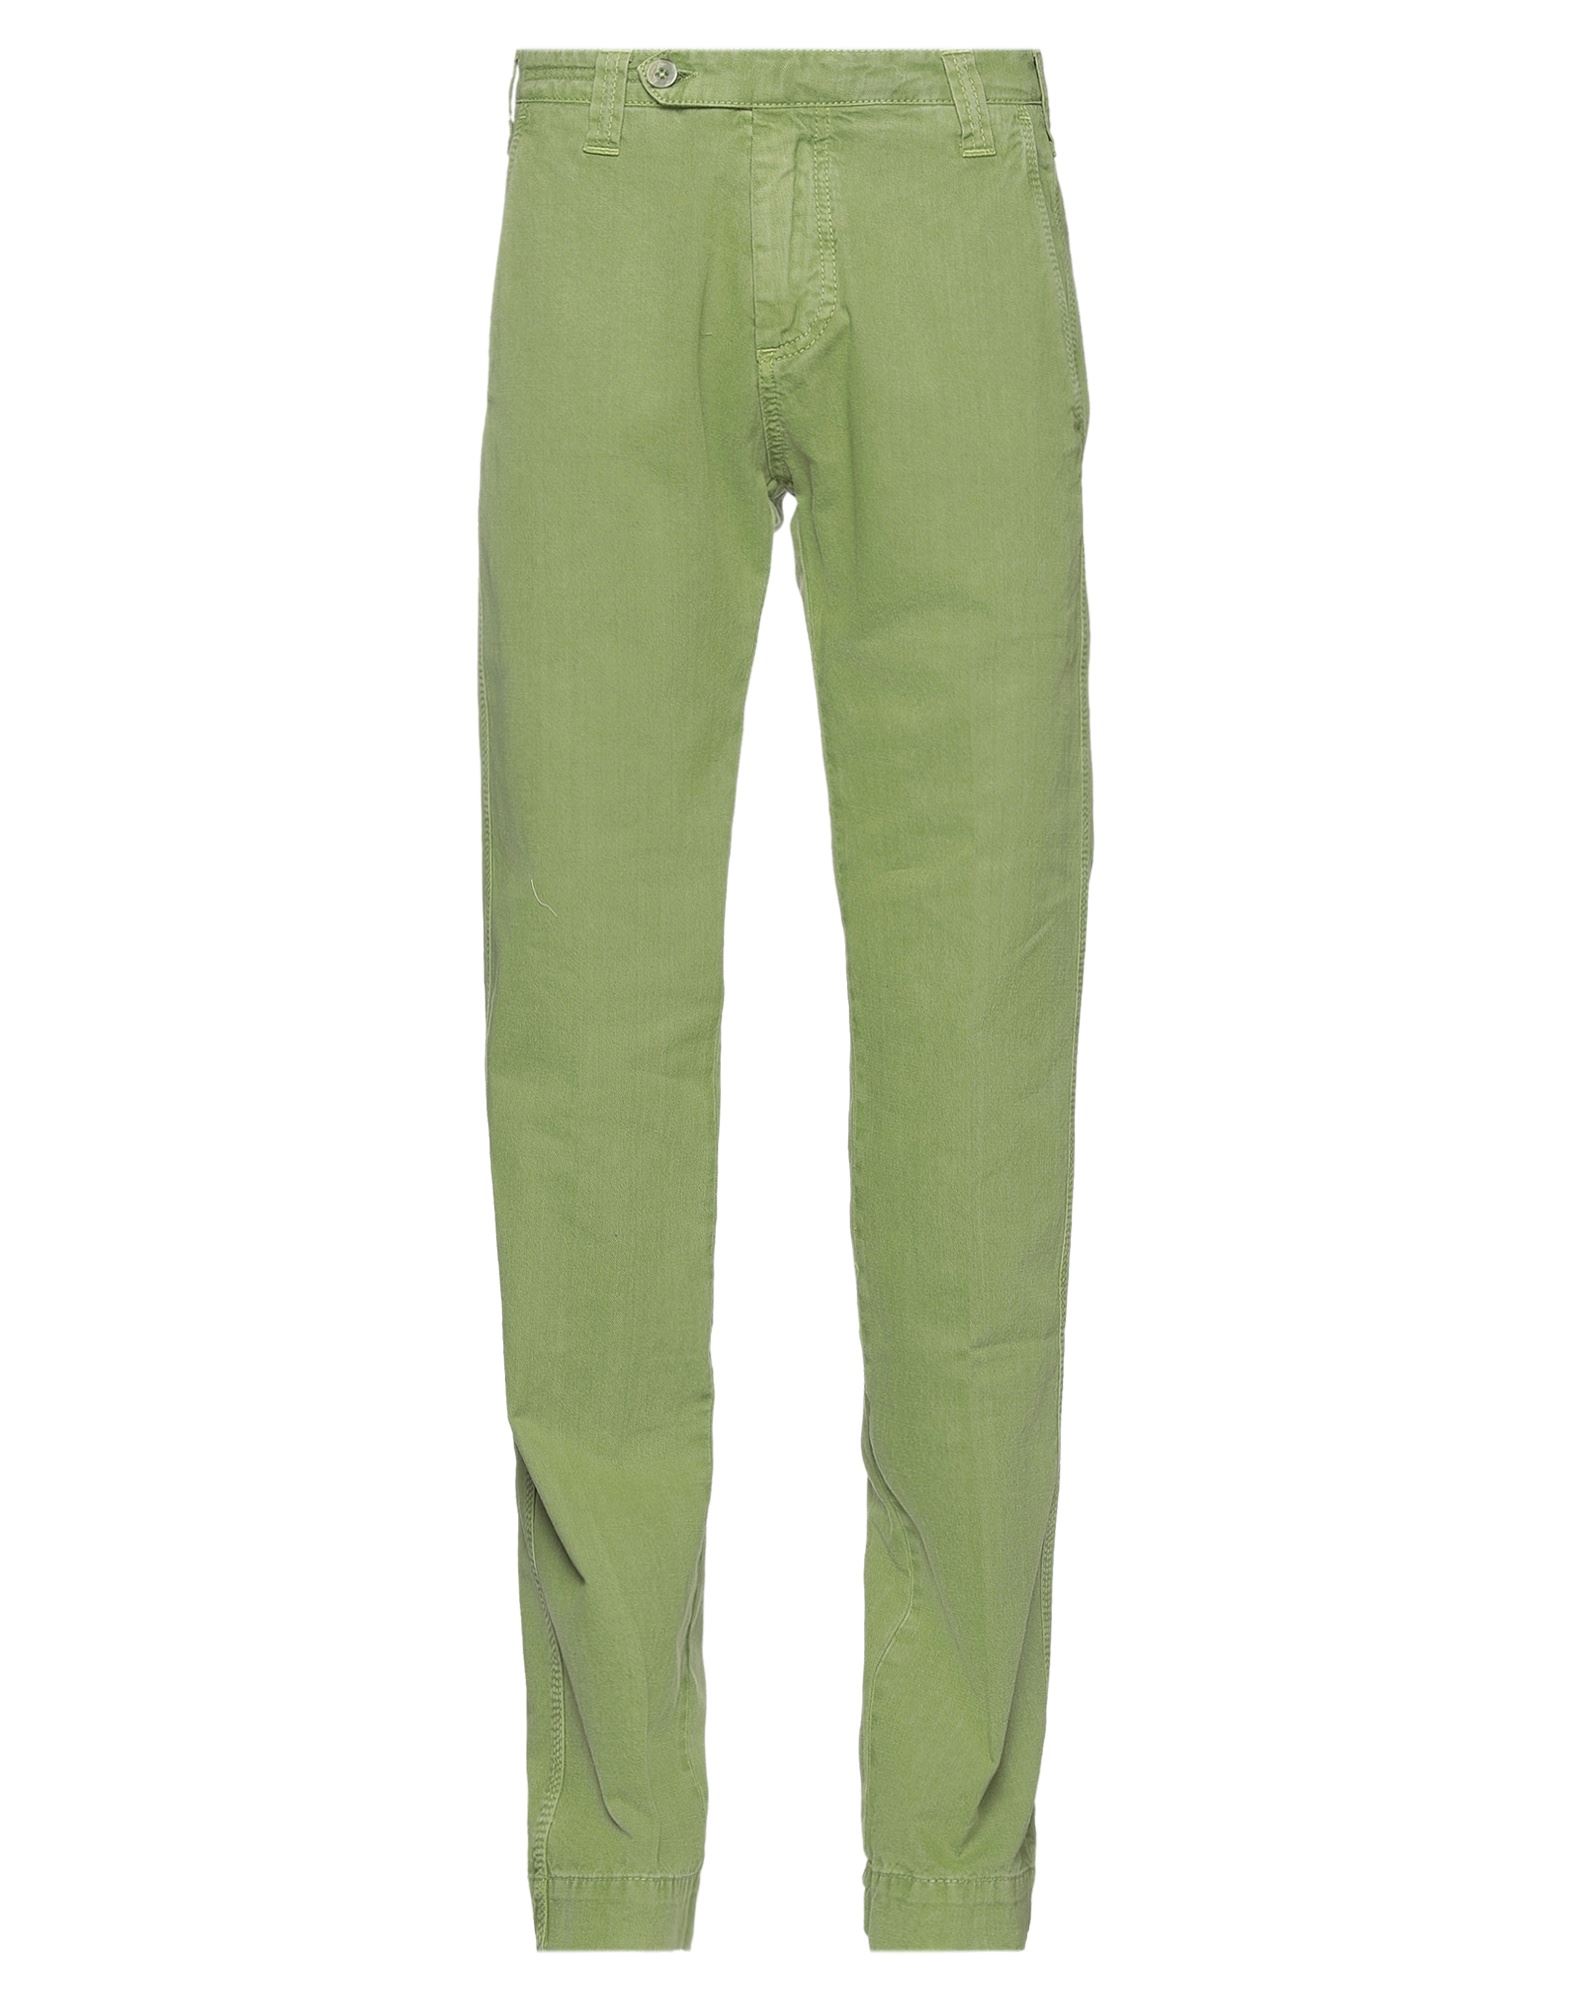 Shop Jacob Cohёn Man Jeans Green Size 30 Cotton